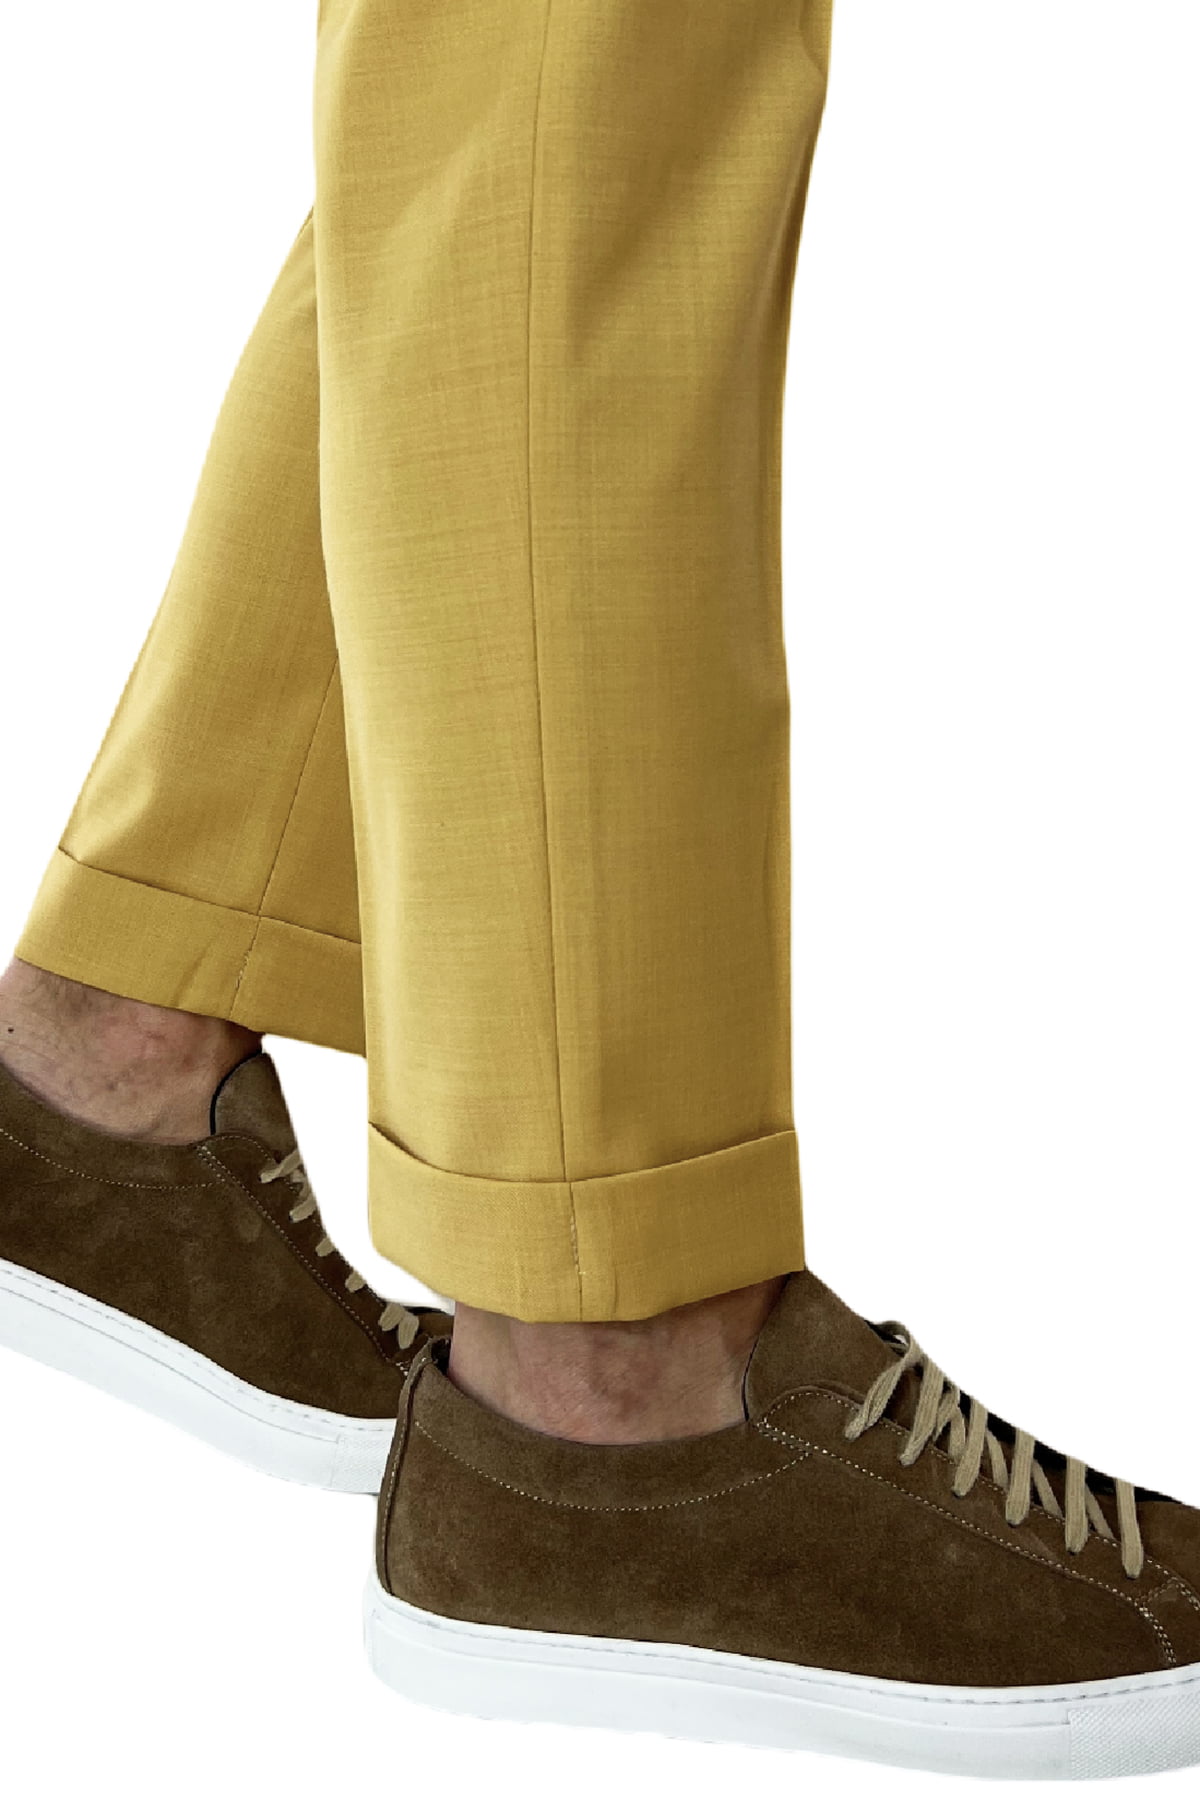 Pantalaccio uomo giallo in fresco lana tasca america con doppia pence e laccio in vita risvolto 4cm